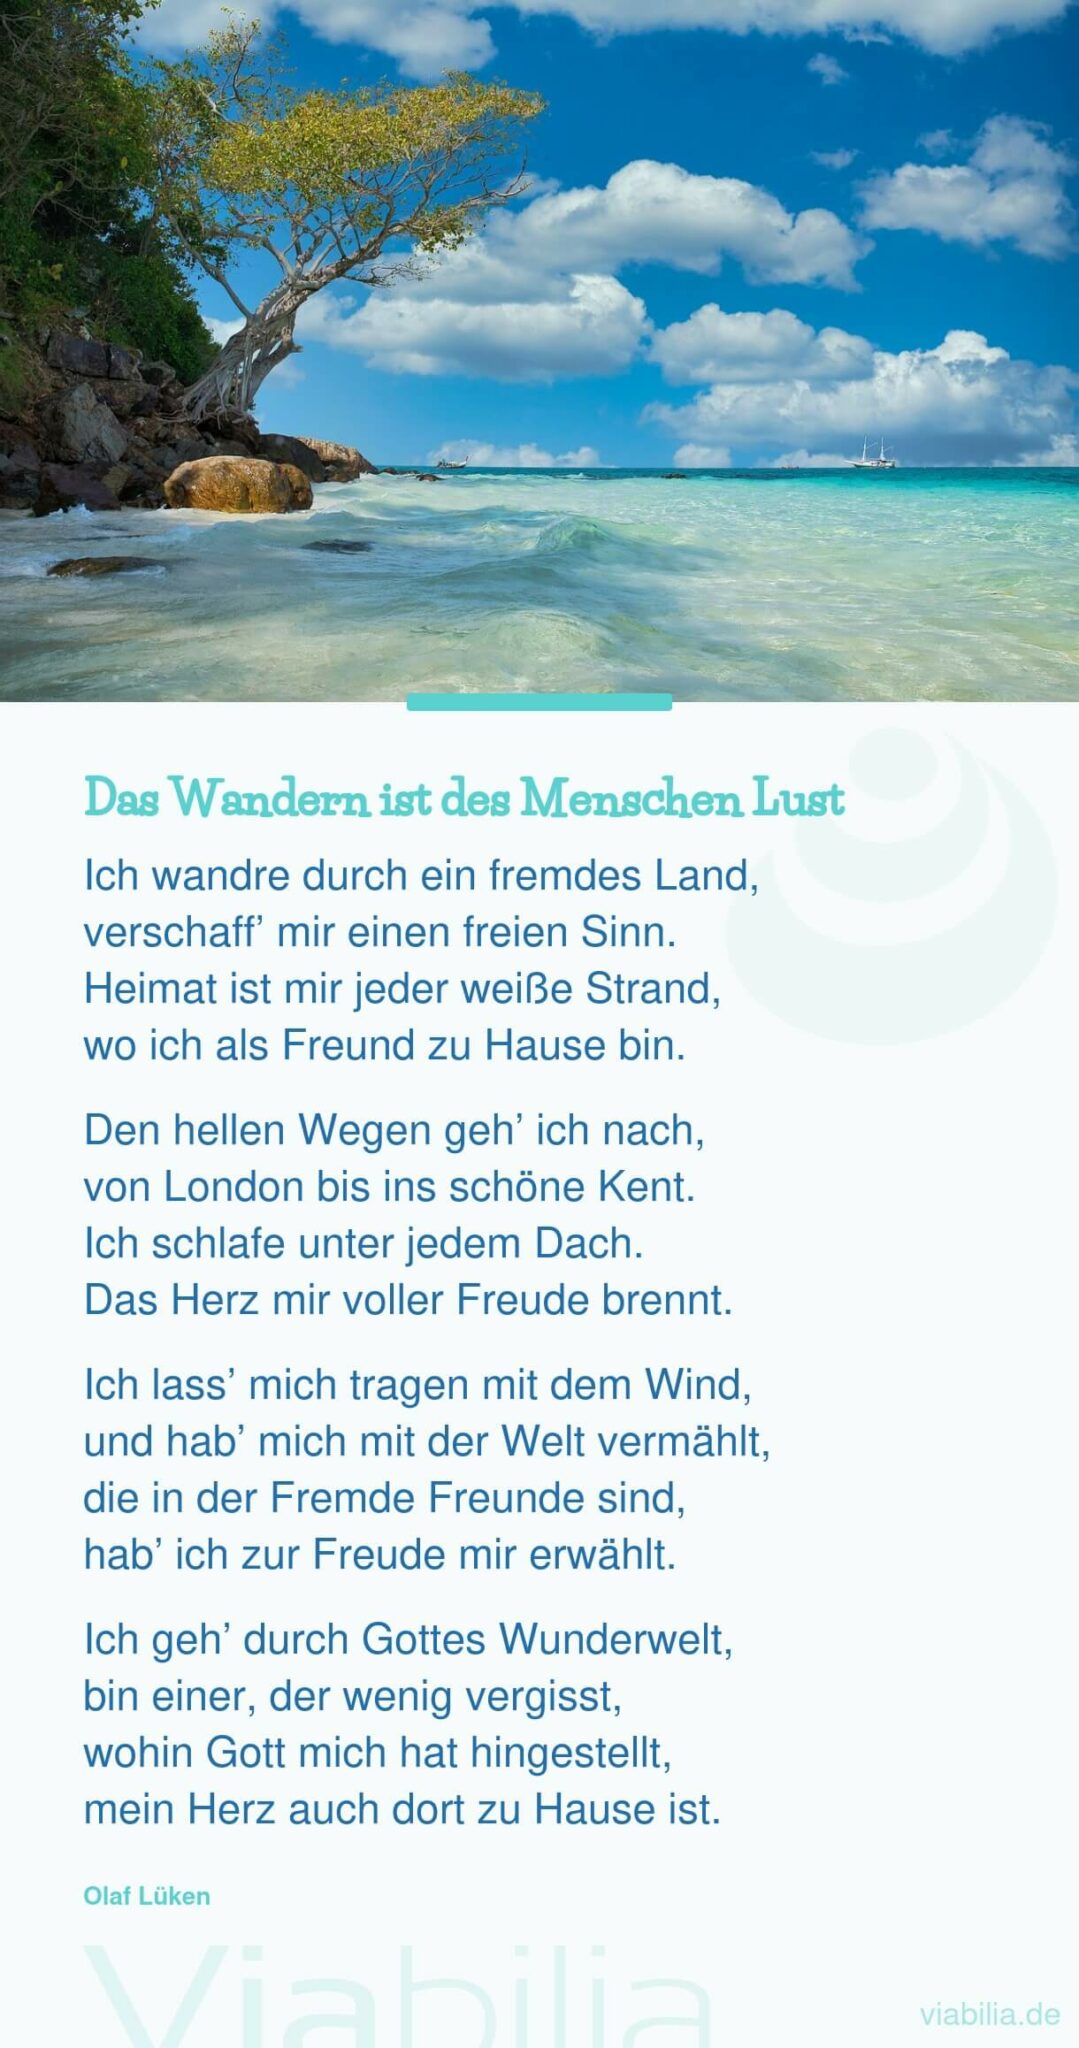 Gedicht von Olaf Lüken über das Wandern